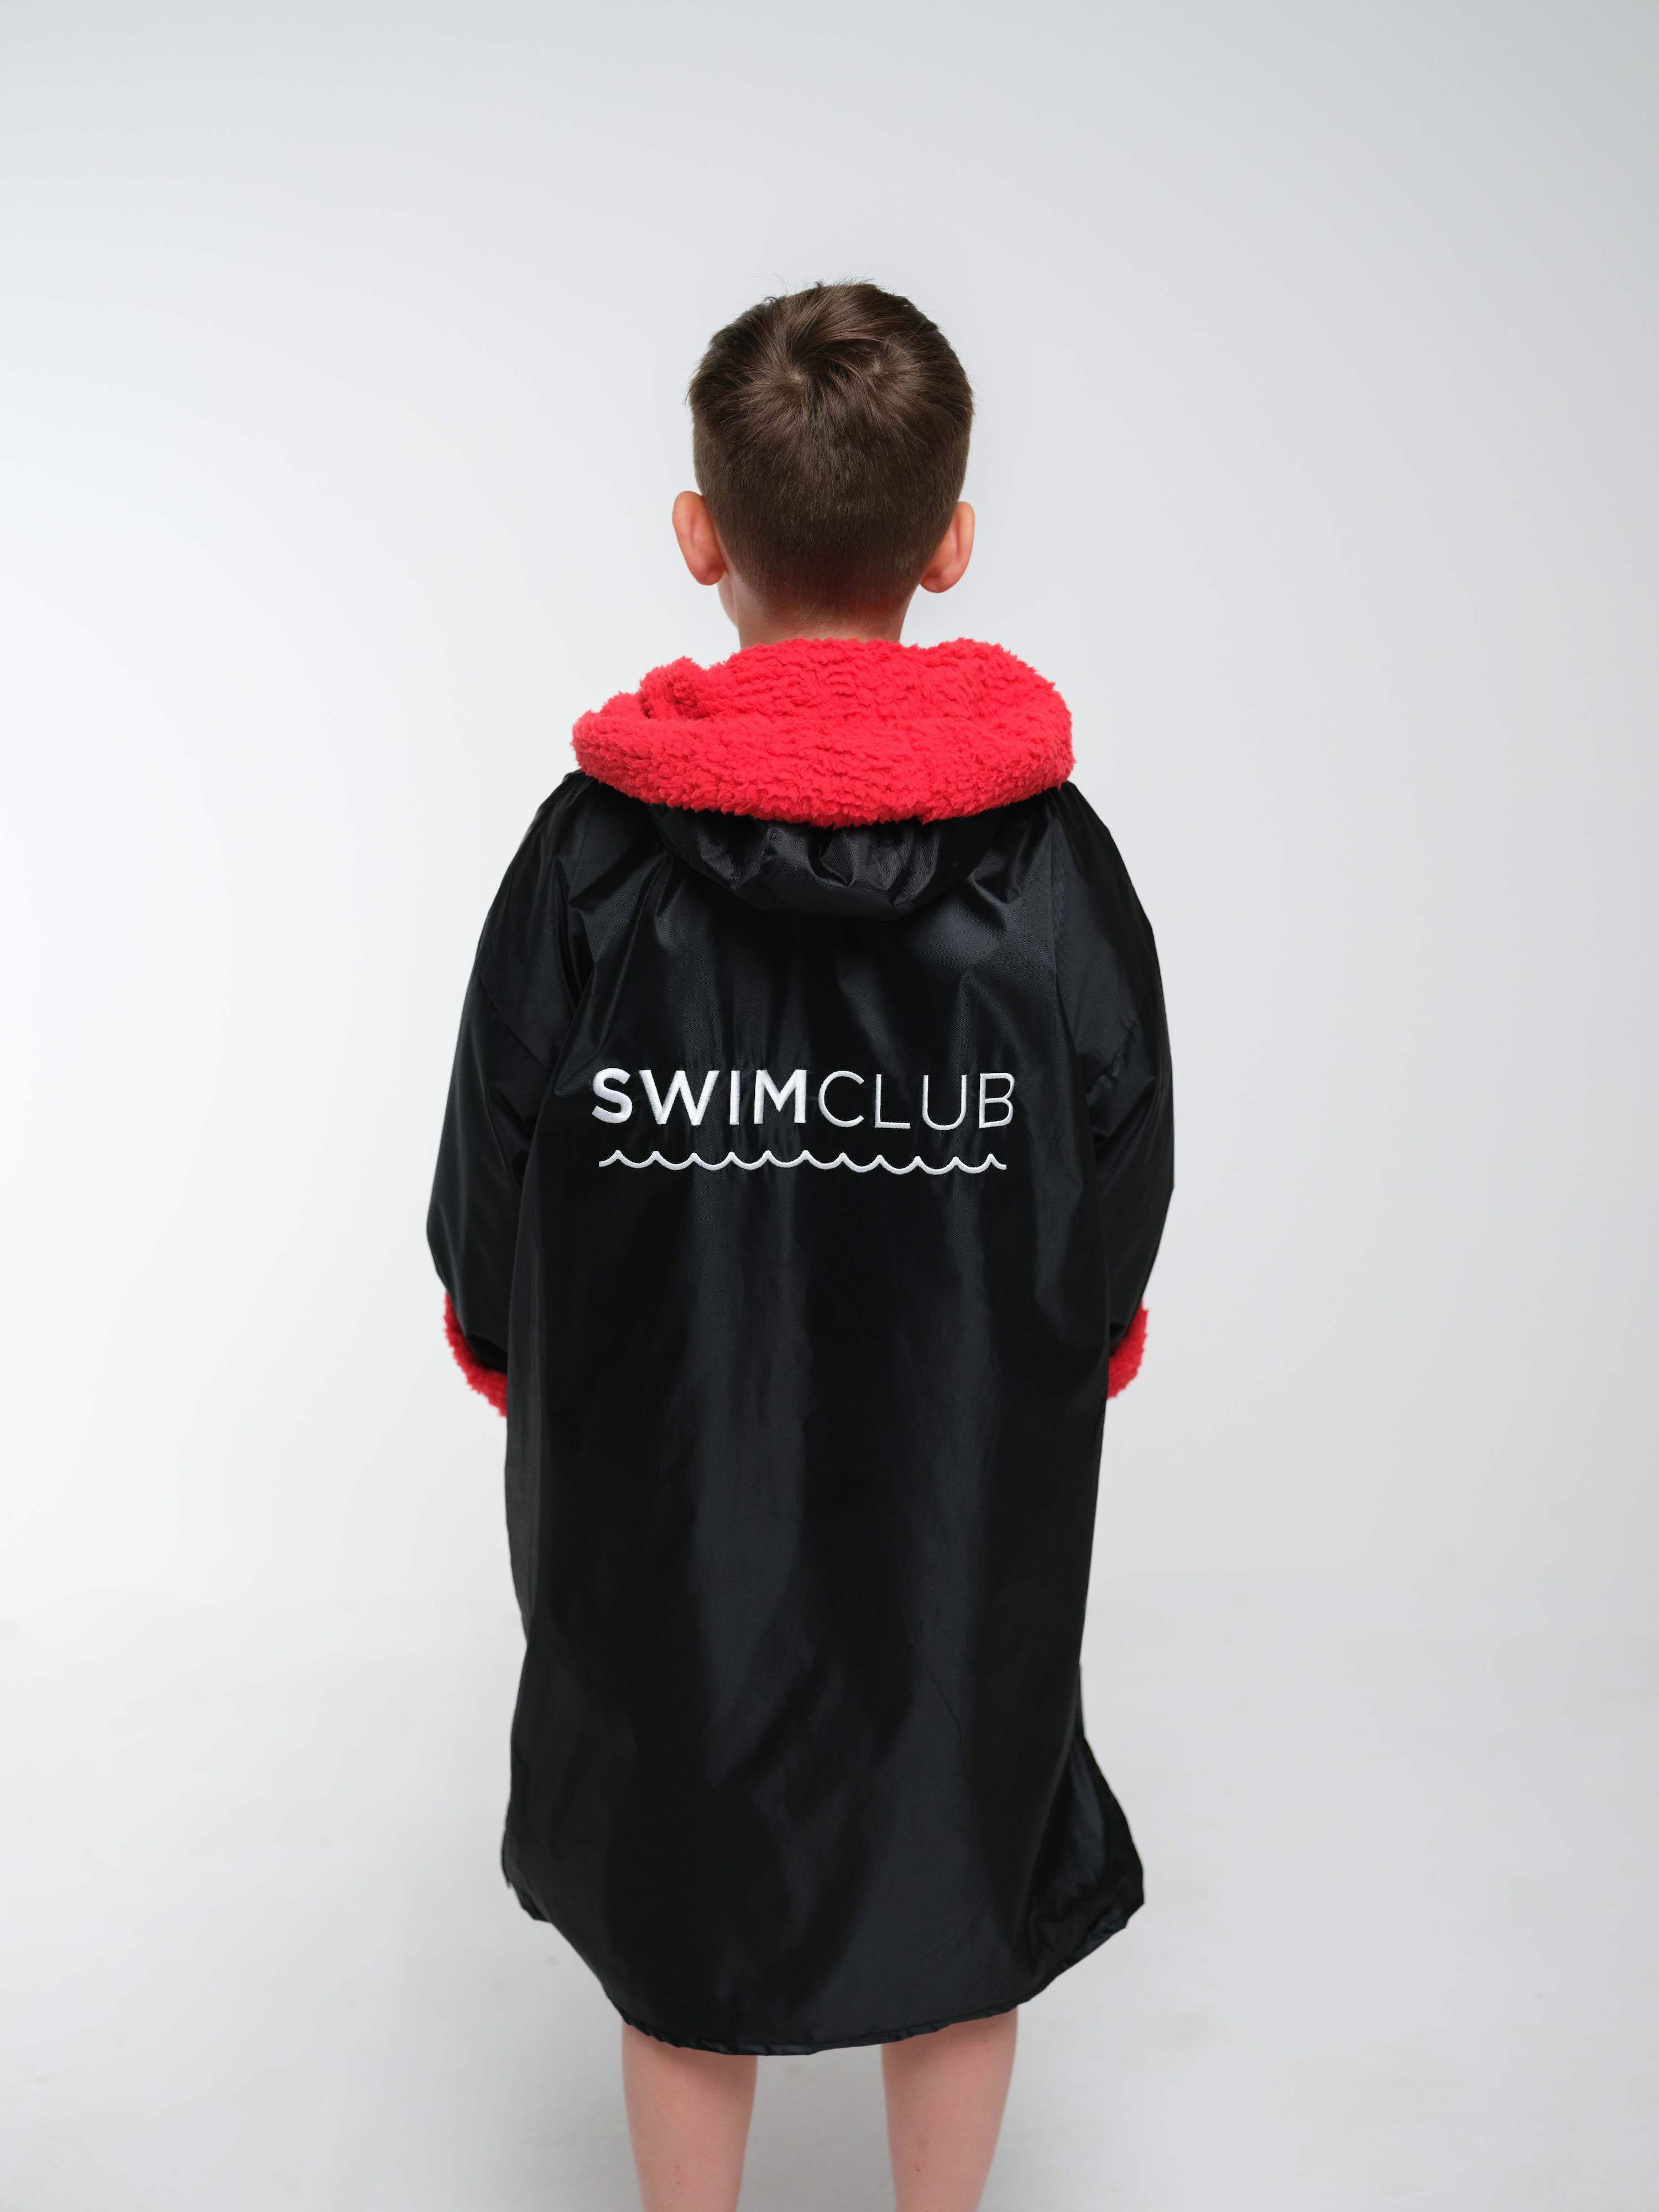 Swimclub Kids Snug - Red